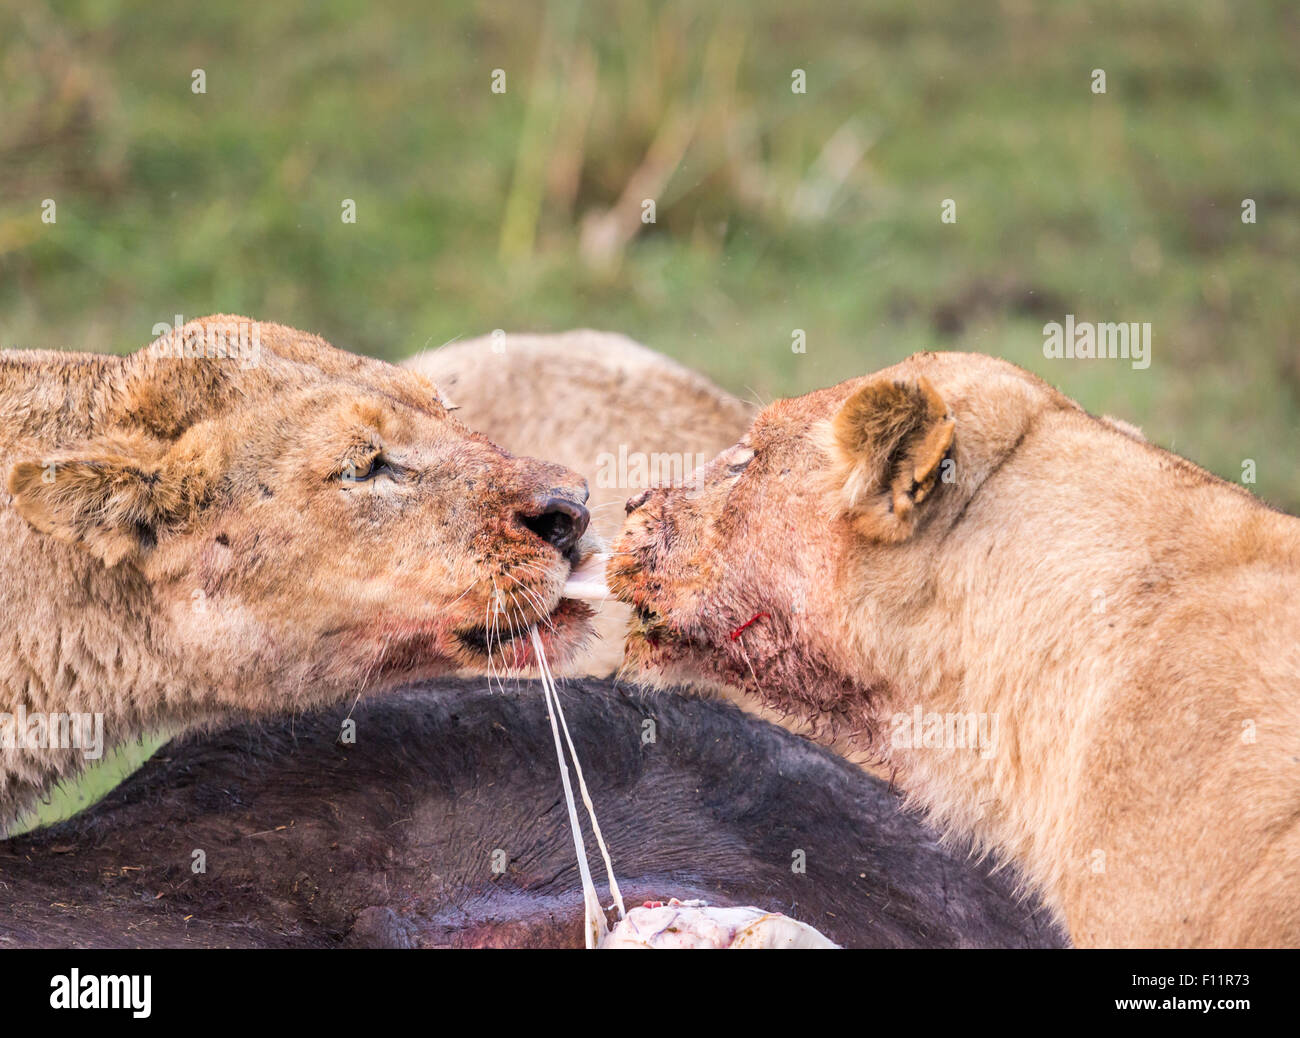 Lionnes, Panthera leo, s'affrontent sur les entrailles d'un tué récemment Cape, Syncerus caffer, Okavango Delta, Botswana du nord Banque D'Images